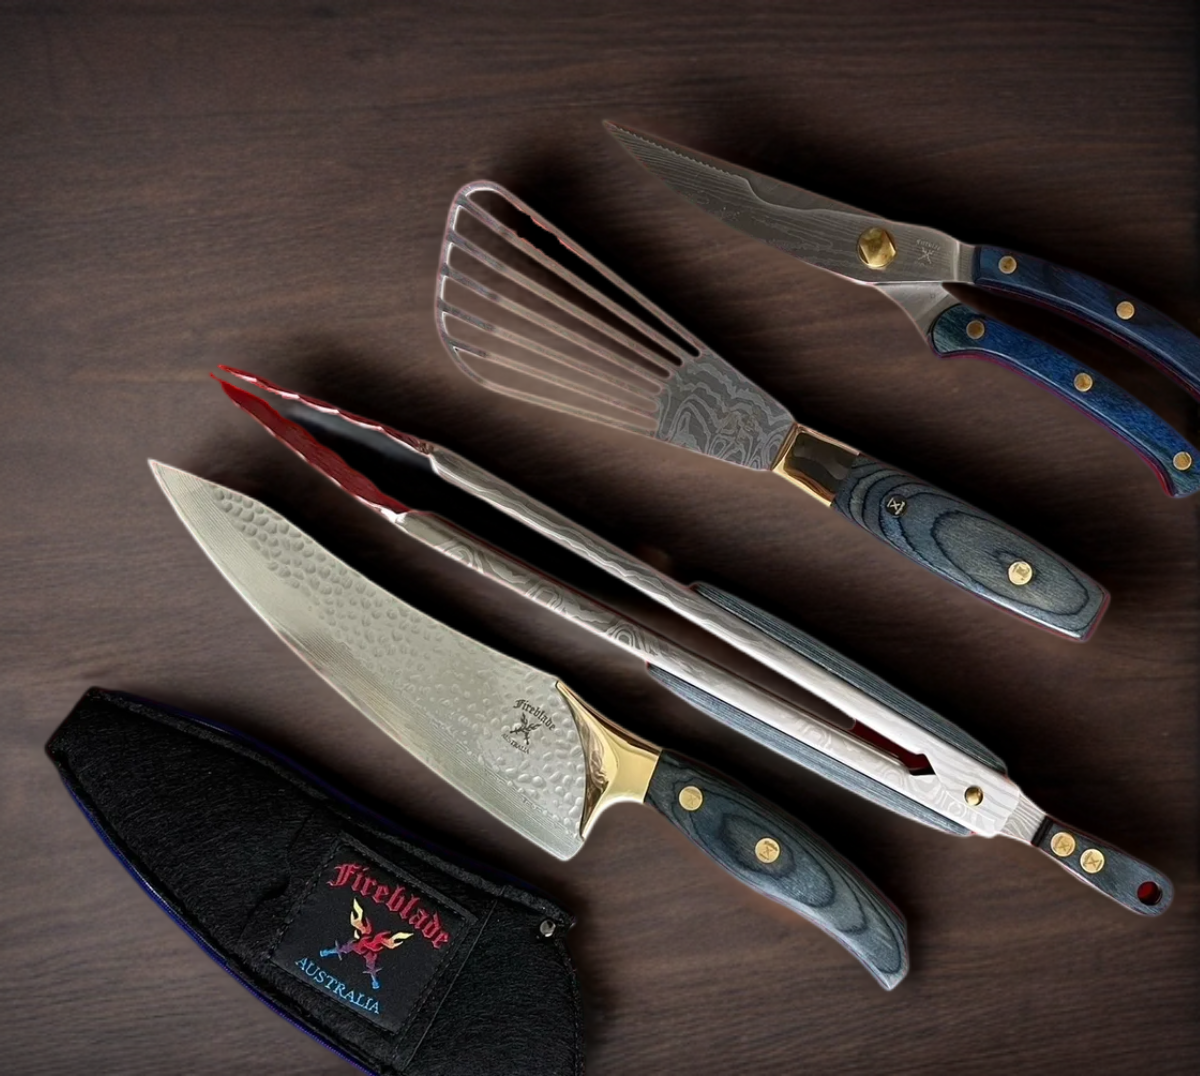 Fireblade Chefs Knife, Sheath & Tool Set